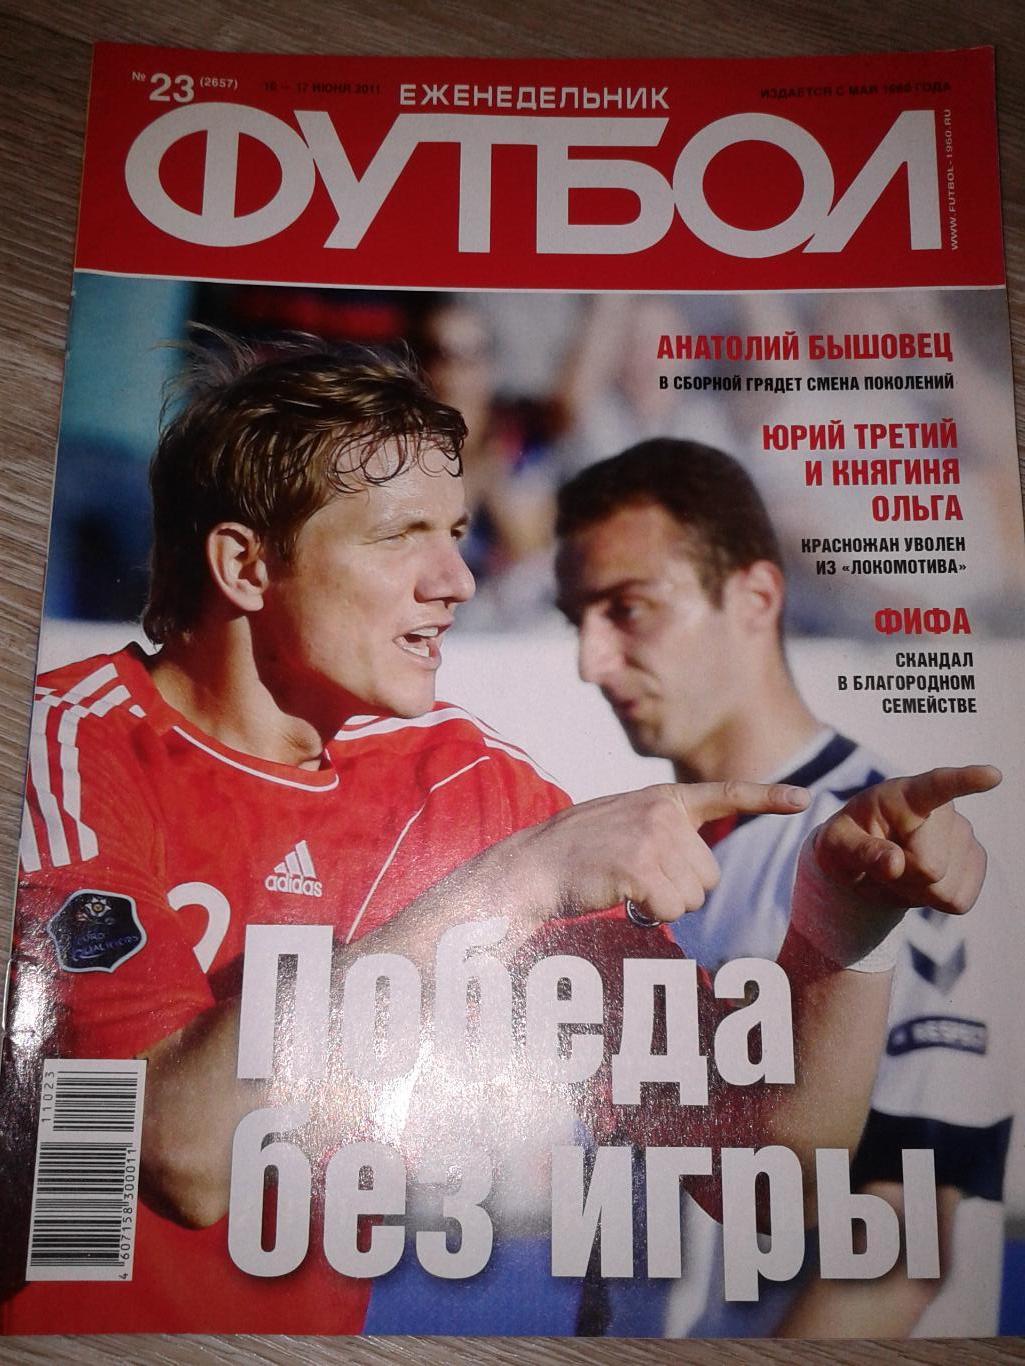 2011 Еженедельник Футбол №23